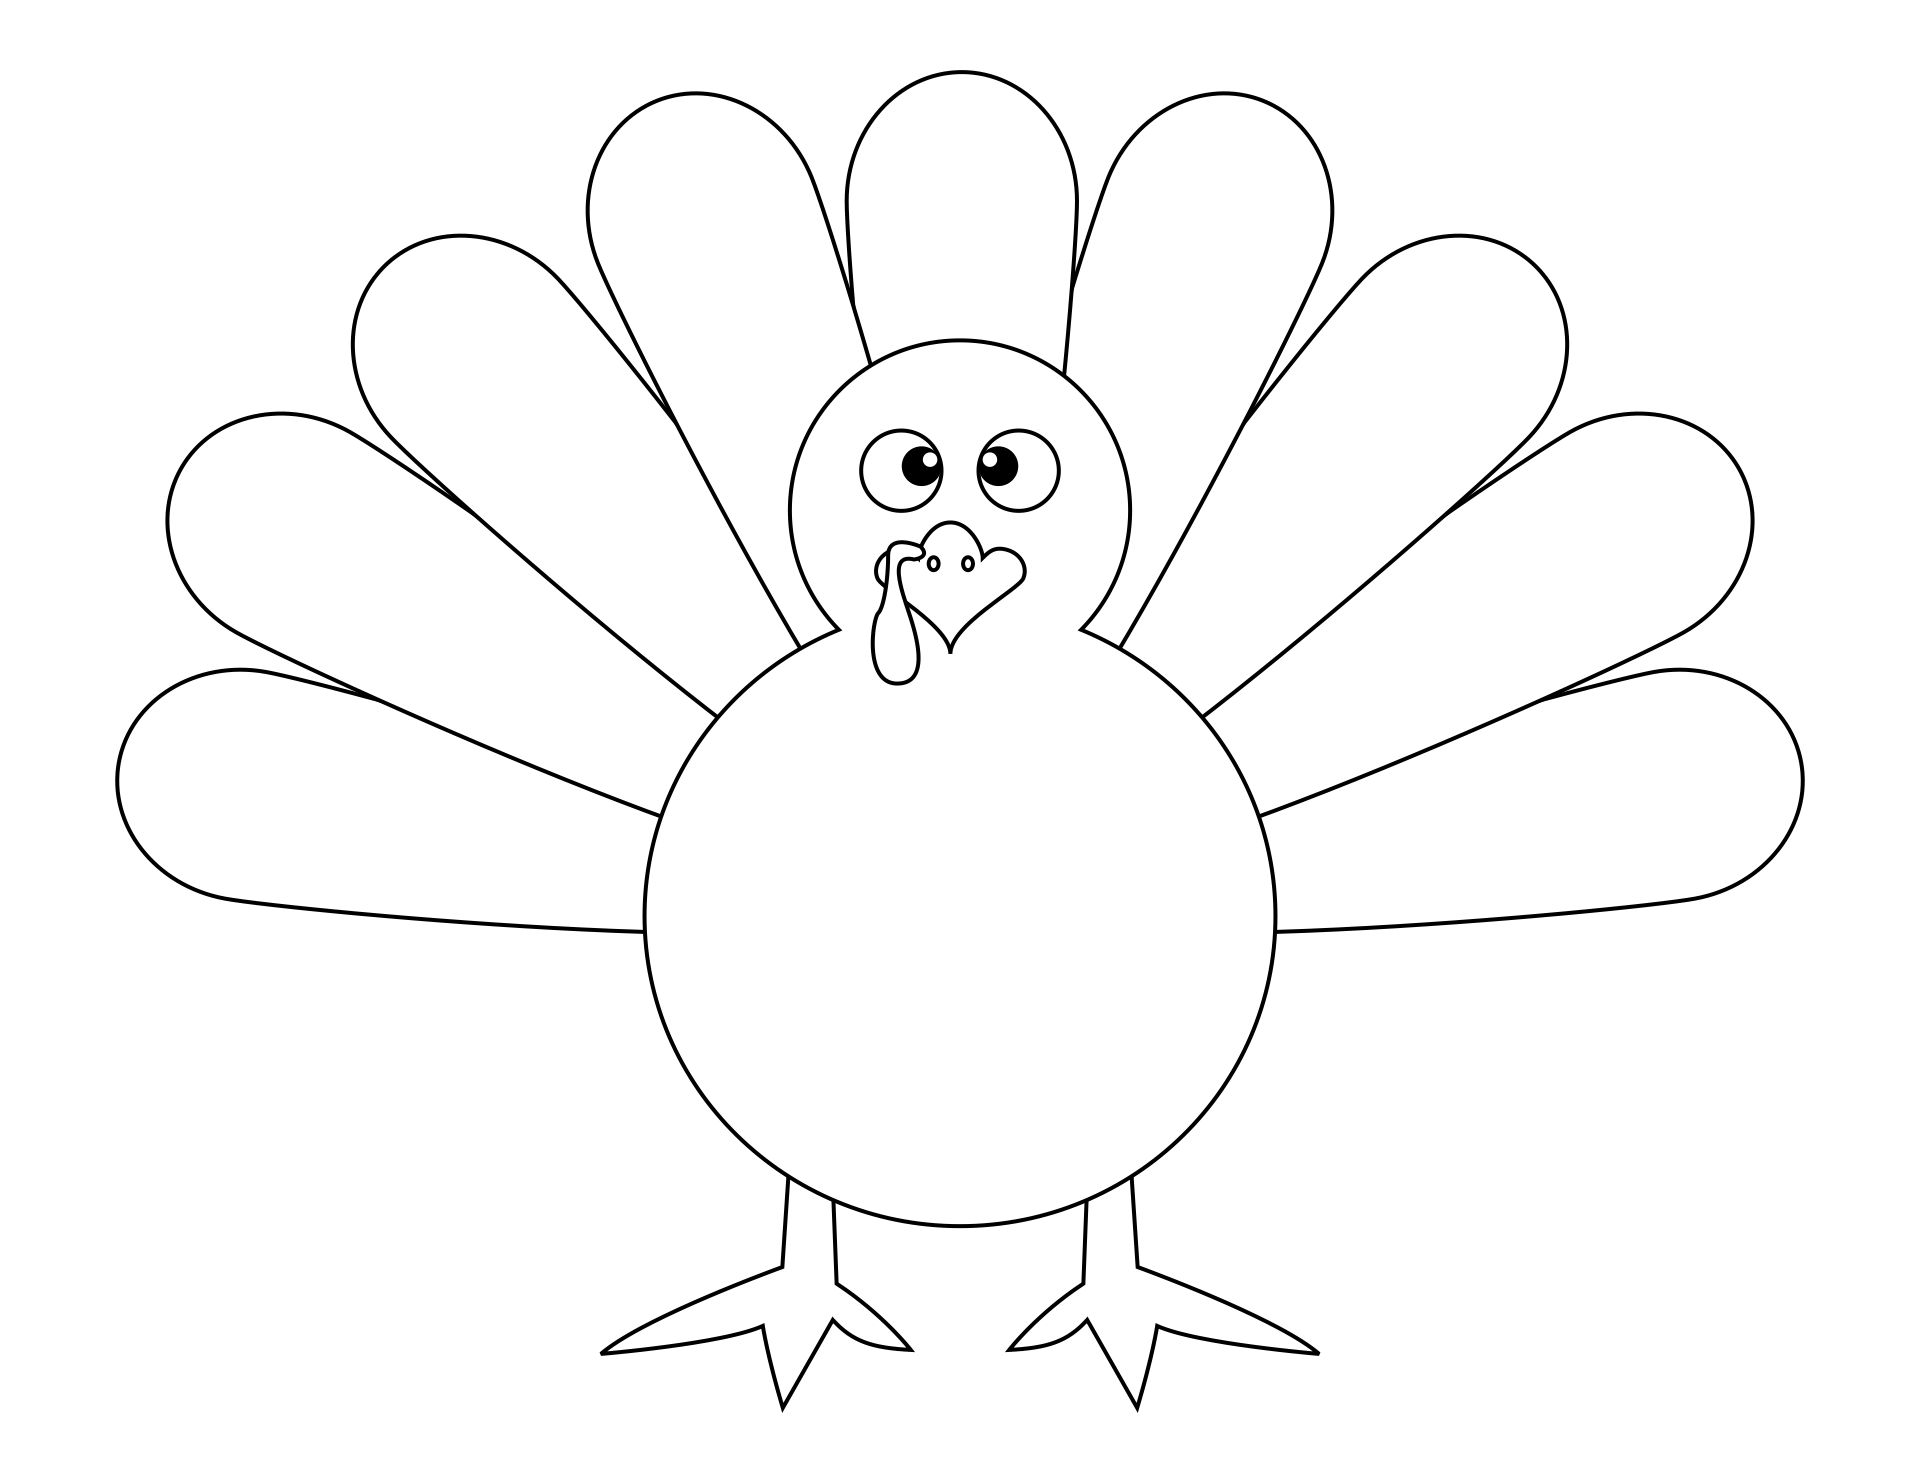 Printable Turkey Template